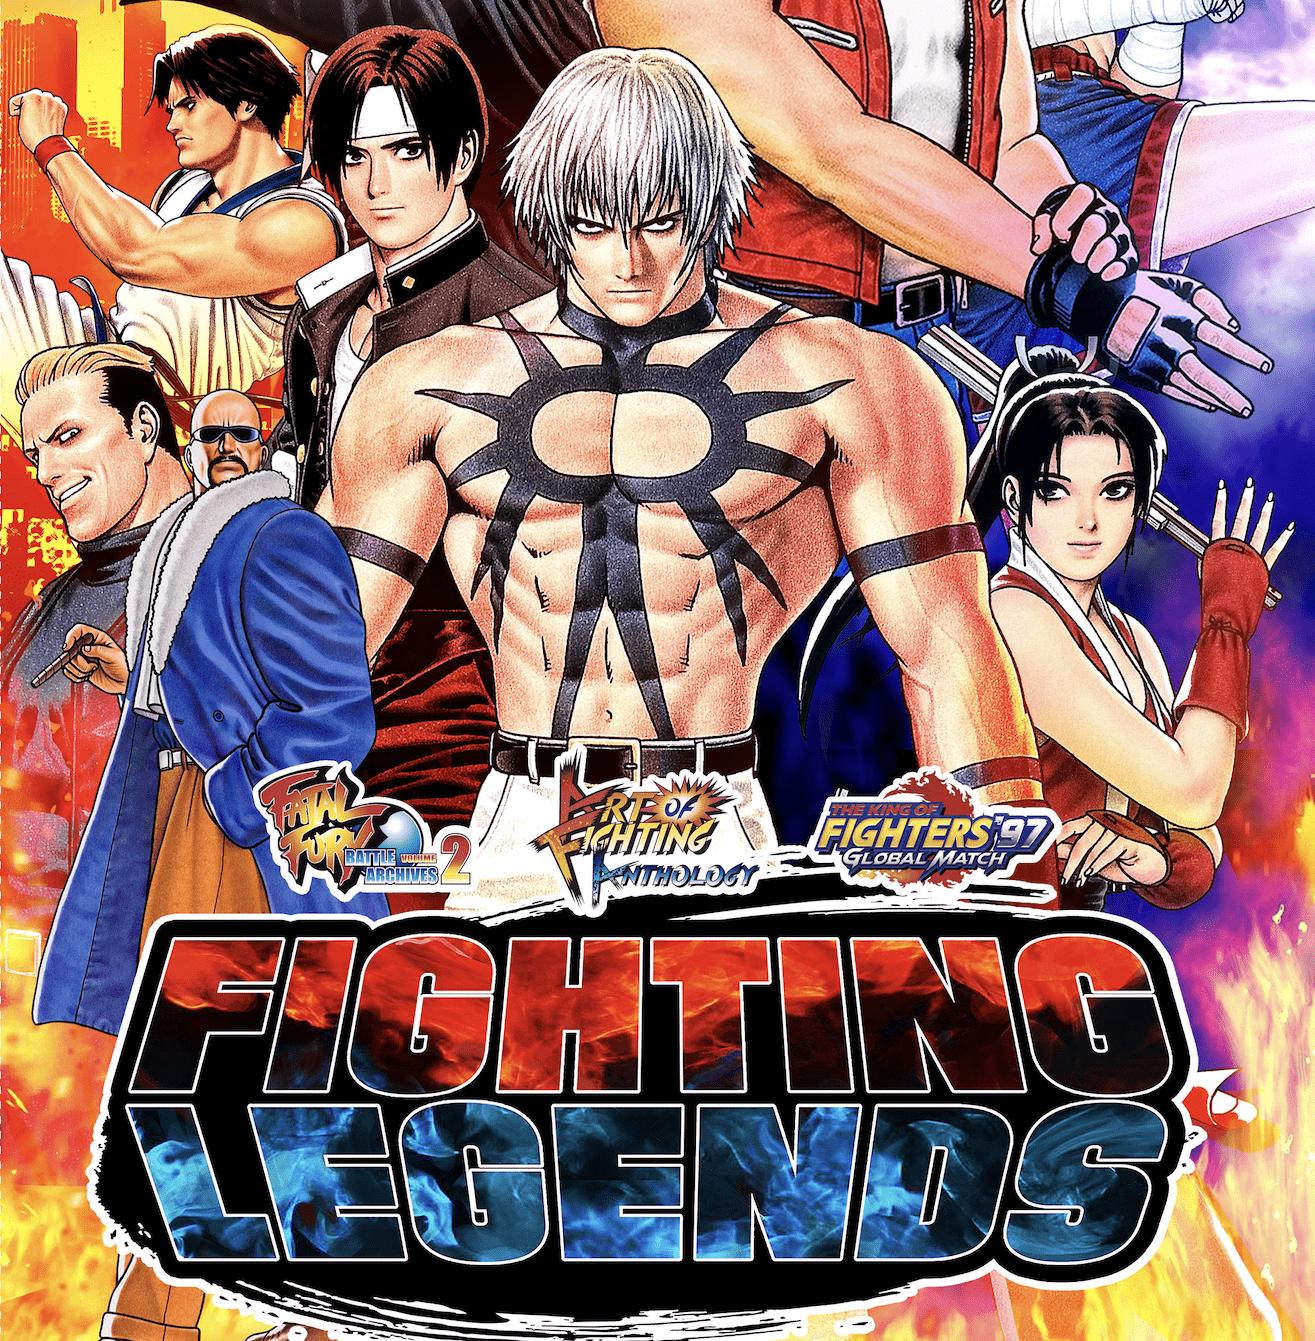 Llega Fighting Legends: los legendarios juegos de SNK que revolucionaron los videojuegos de lucha